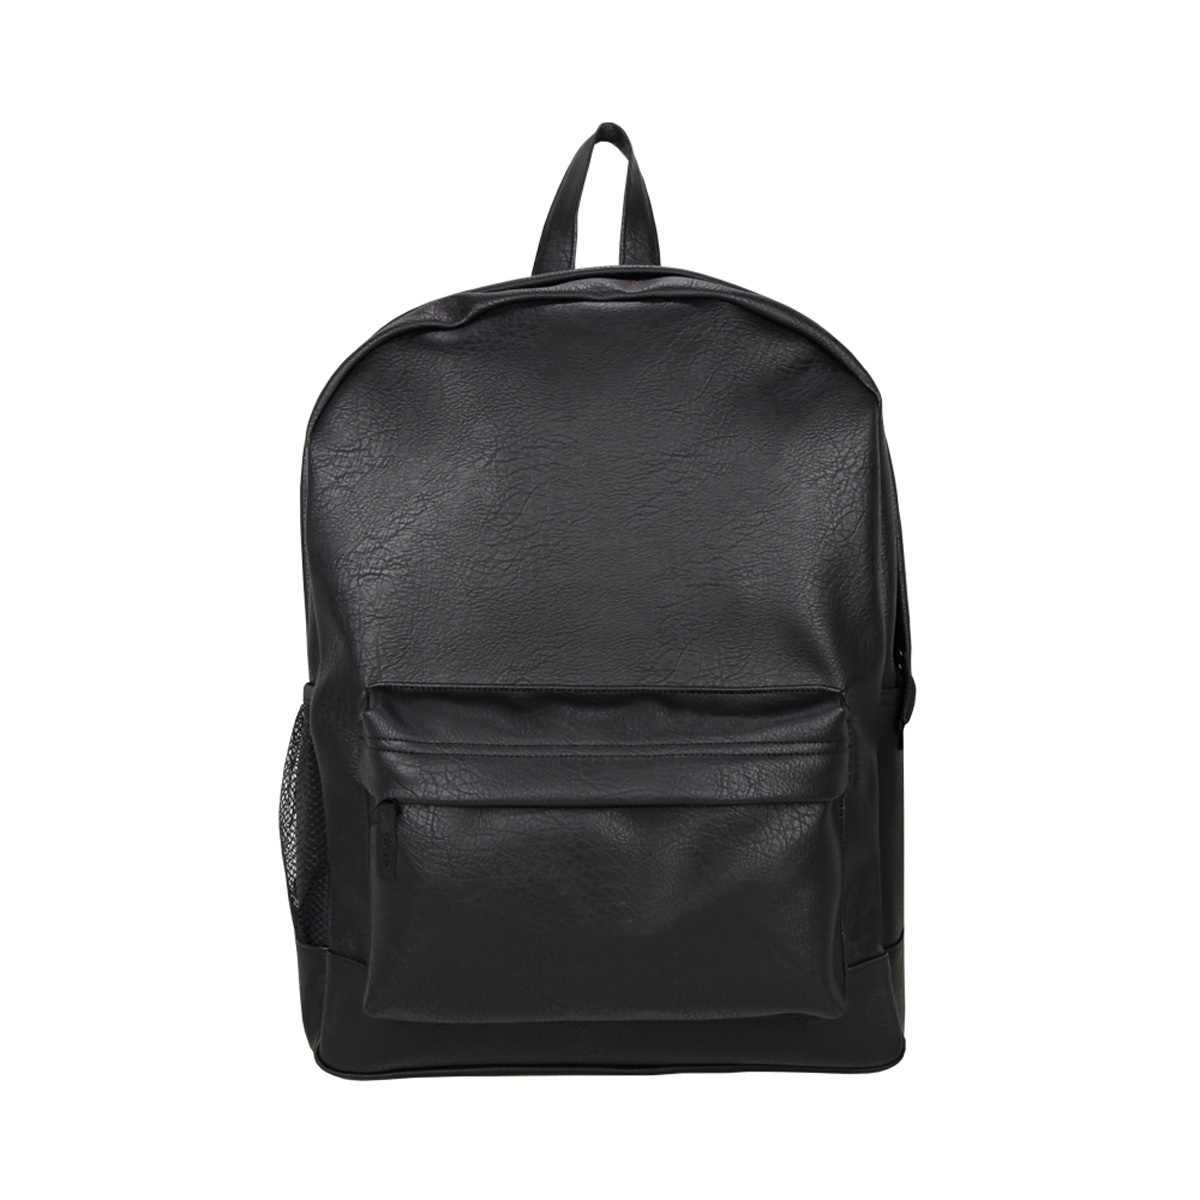 Picture of Buy Smart Depot G3655 Black Vegan Leather Backpack - Black